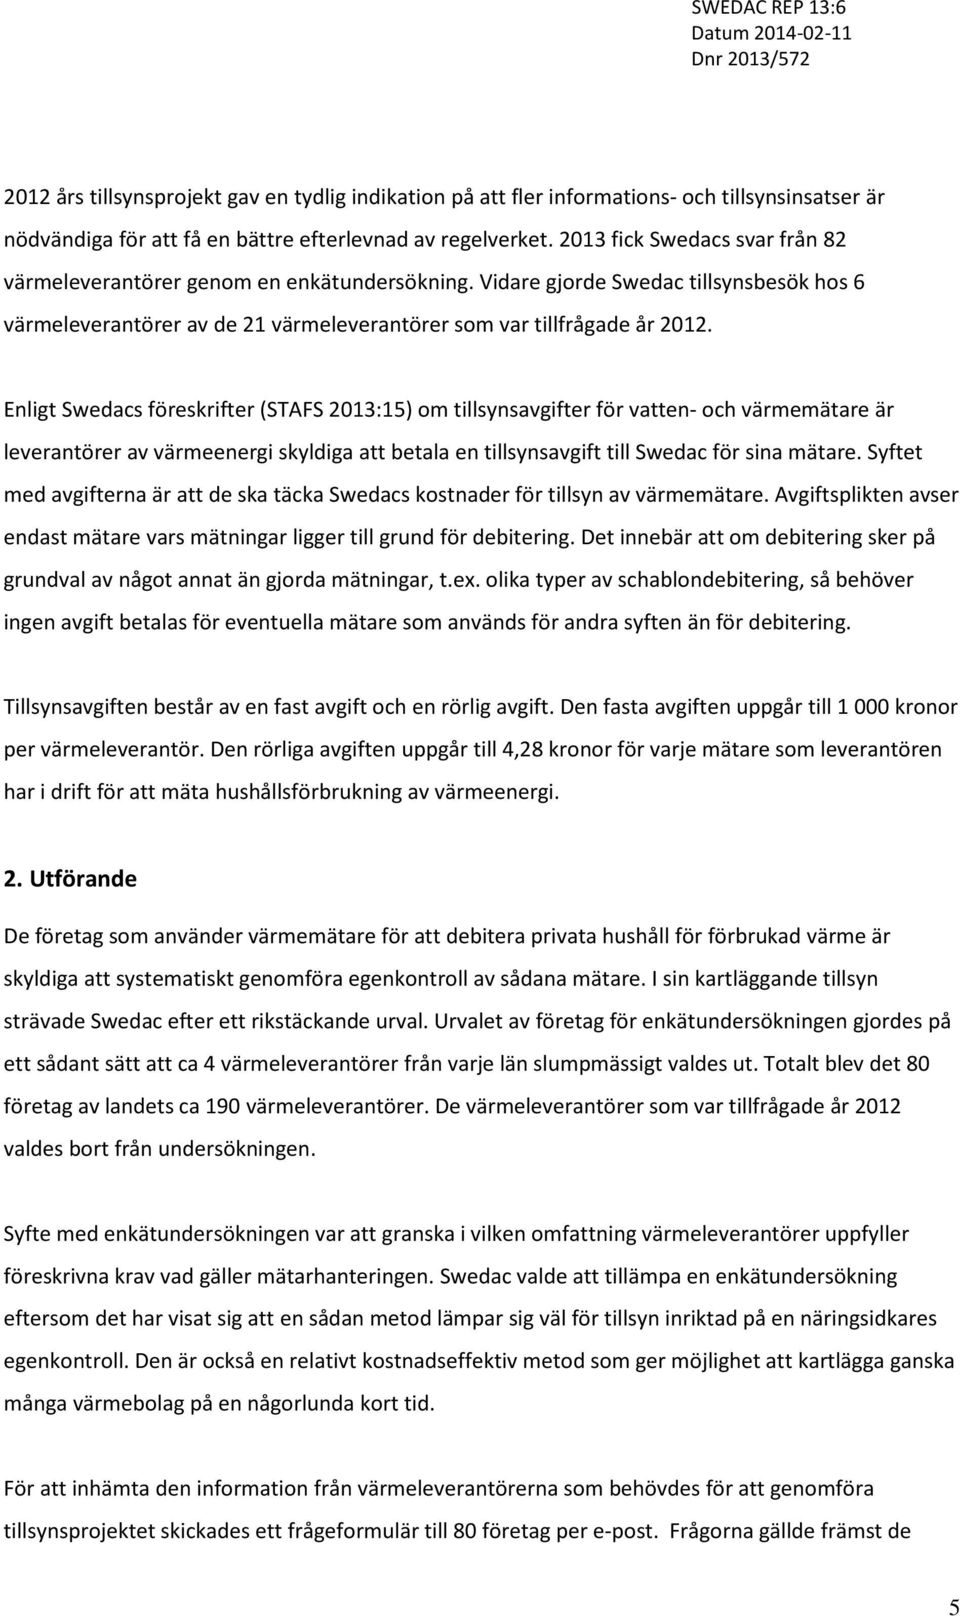 Enligt Swedacs föreskrifter (STAFS 2013:15) om tillsynsavgifter för vatten- och värmemätare är leverantörer av värmeenergi skyldiga att betala en tillsynsavgift till Swedac för sina mätare.